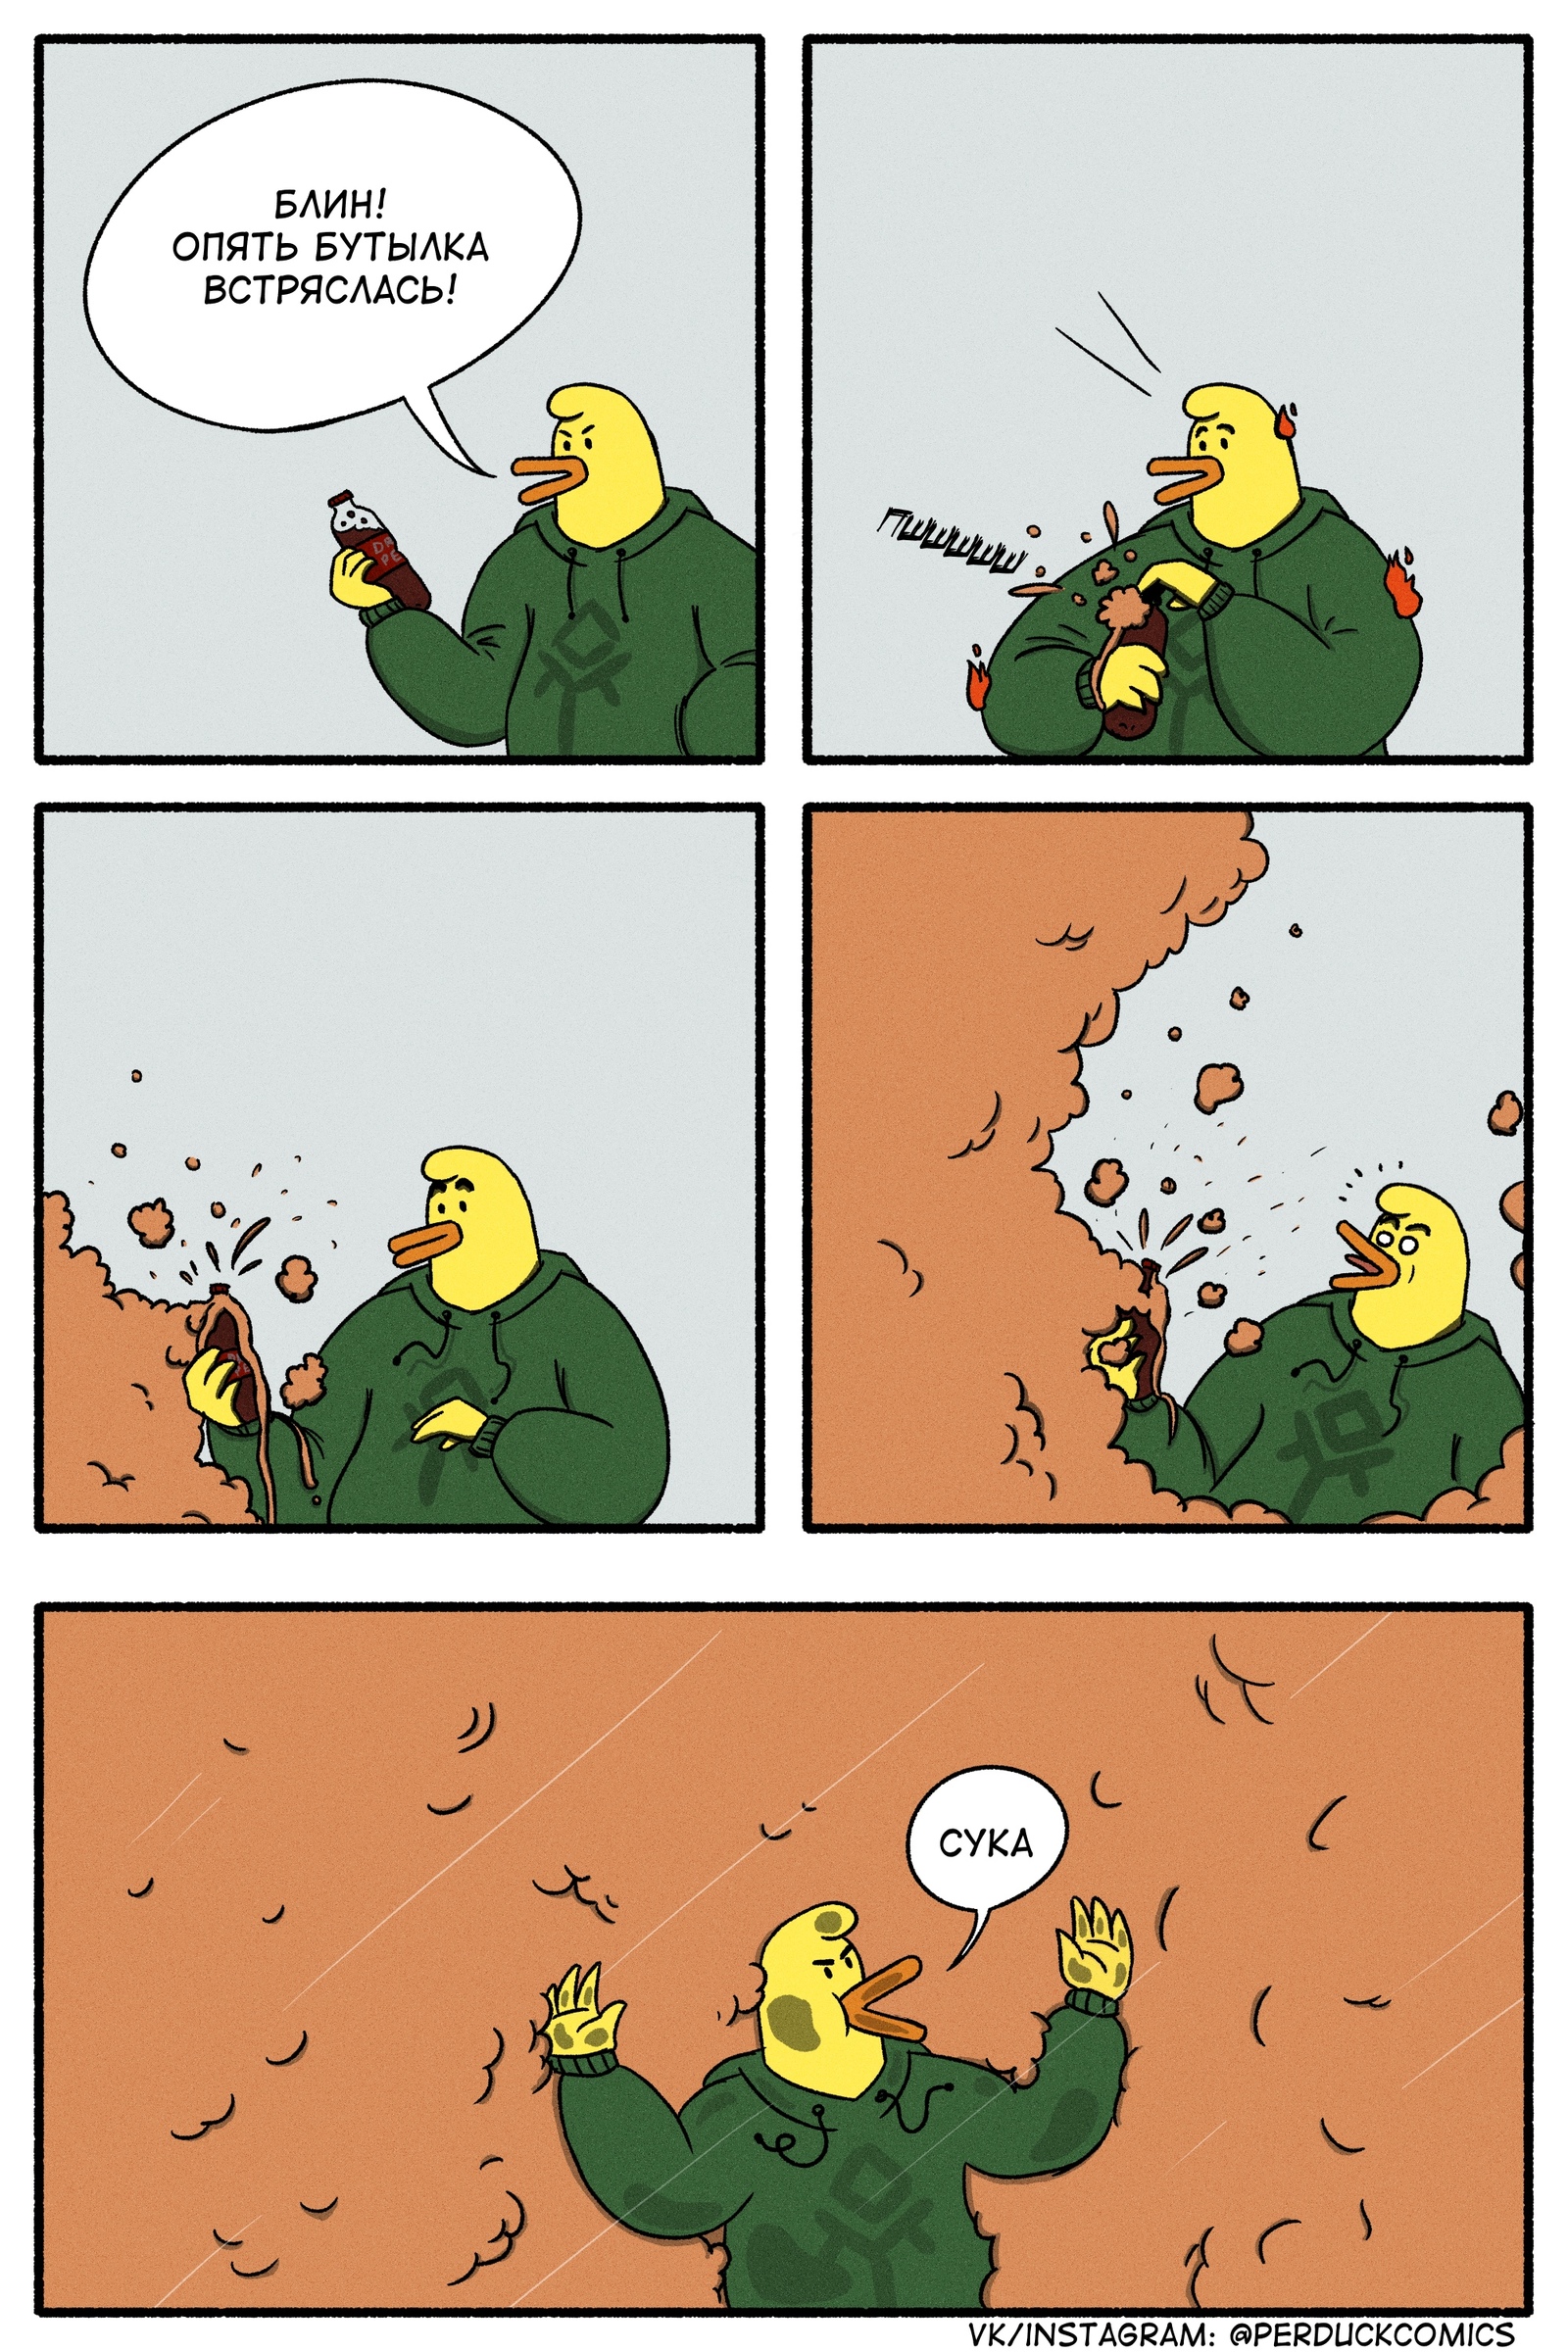 Foam - My, Web comic, Humor, Duck, Infuriates, Foam